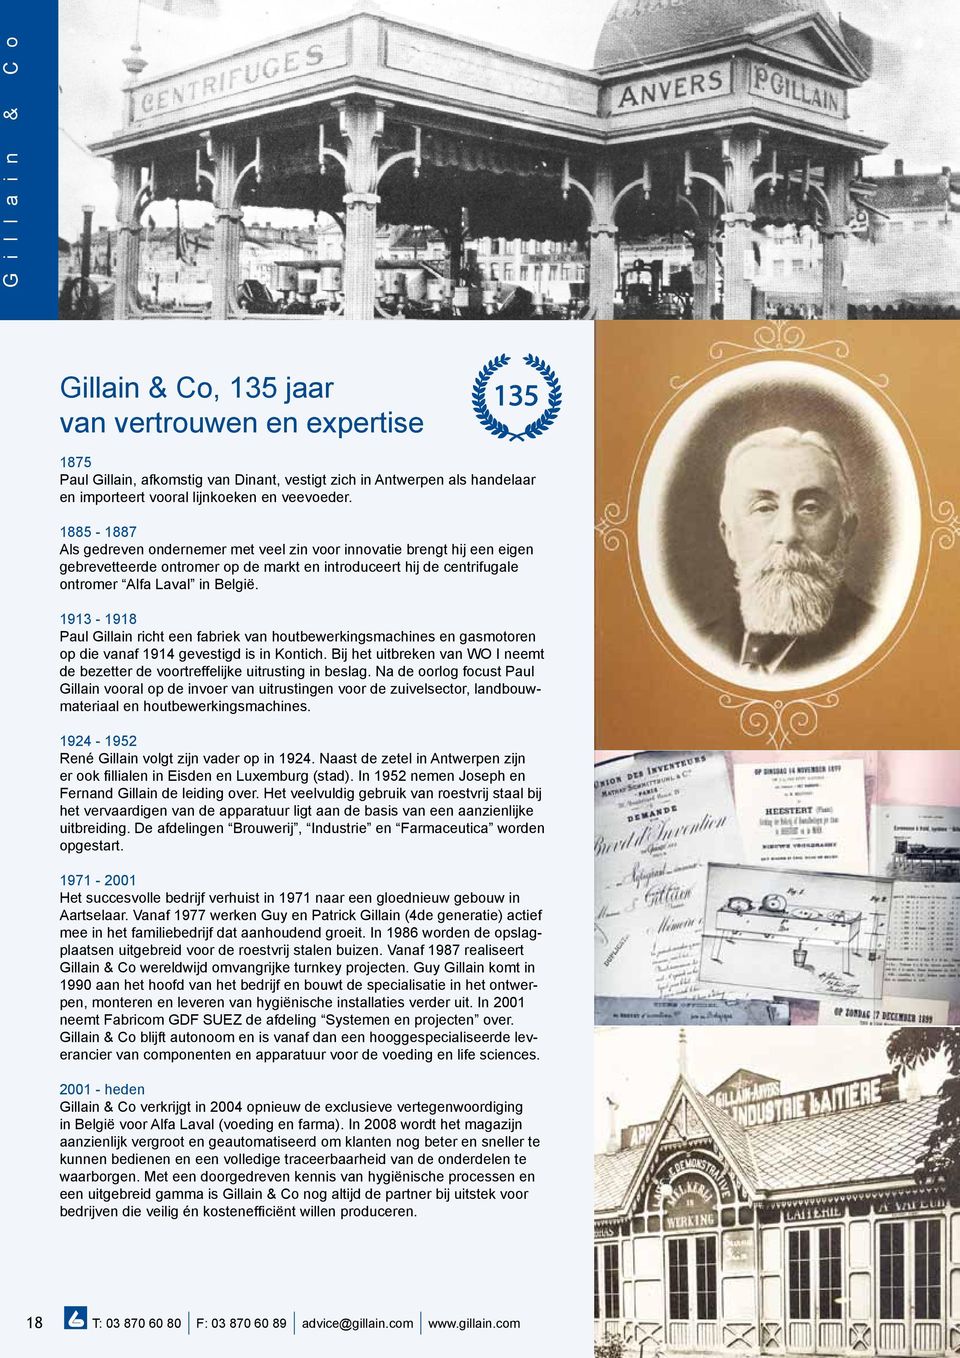 1913-1918 Paul Gillain richt een fabriek van houtbewerkingsmachines en gasmotoren op die vanaf 1914 gevestigd is in Kontich.